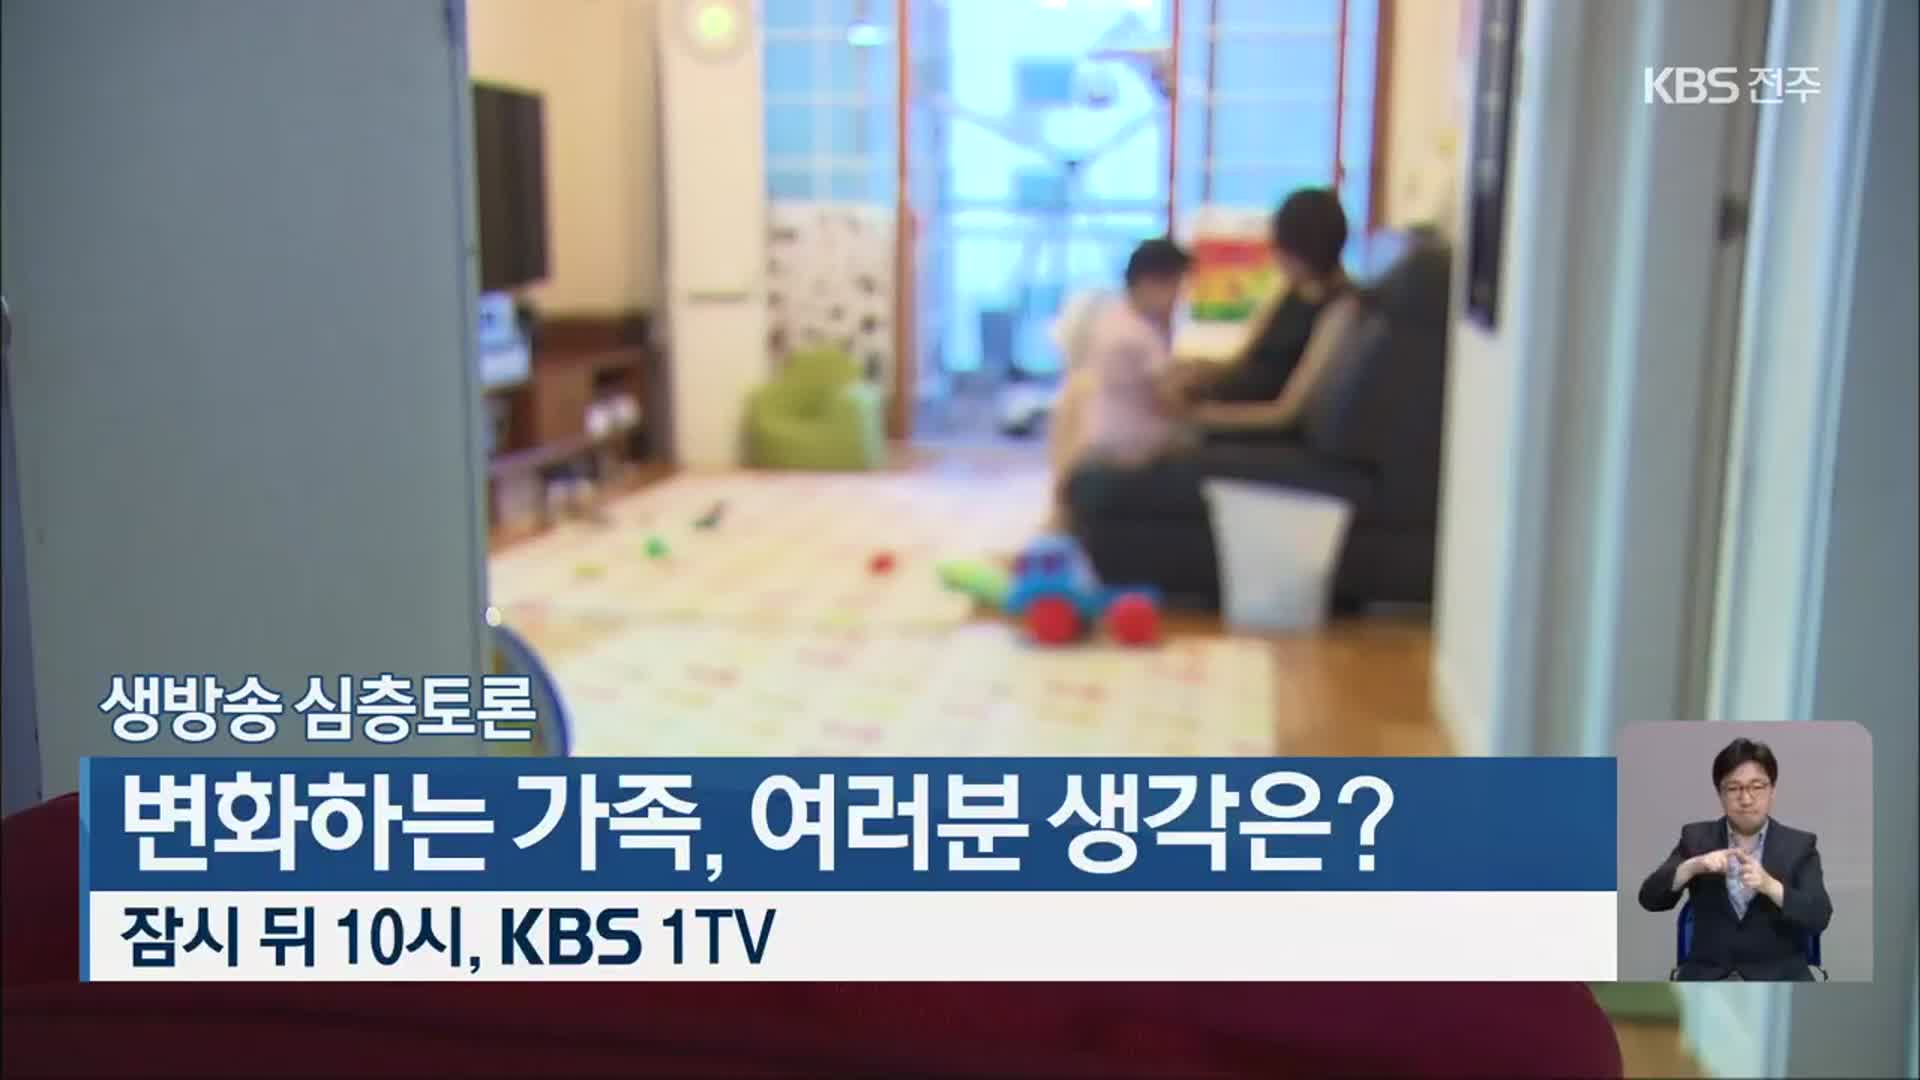 [생방송 심층토론] 변화하는 가족, 여러분 생각은? 오늘 밤 10시 KBS 1TV 방송